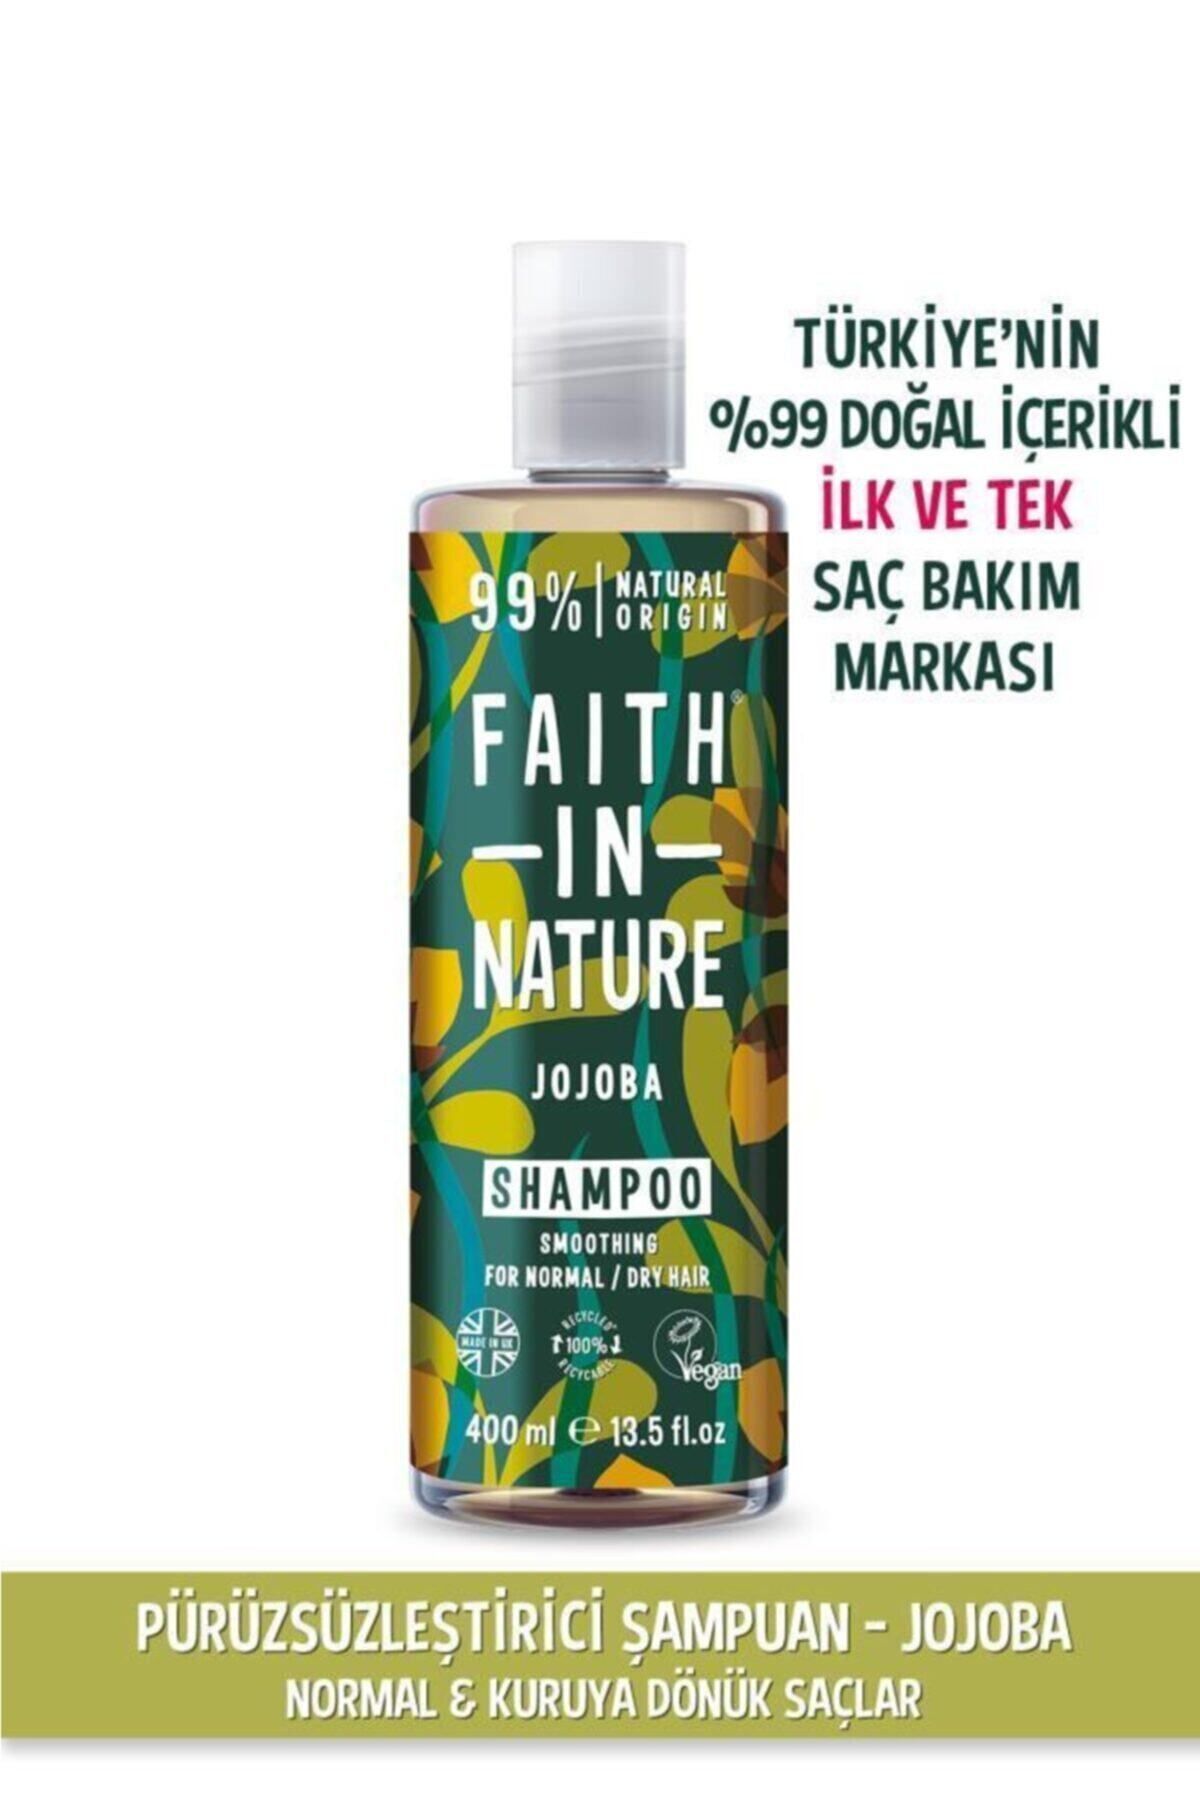 Faith In Nature %99 Doğal Pürüzsüzleştirici Şampuan  Jojoba Normal&Kuruya Dönük Saçlar İçin